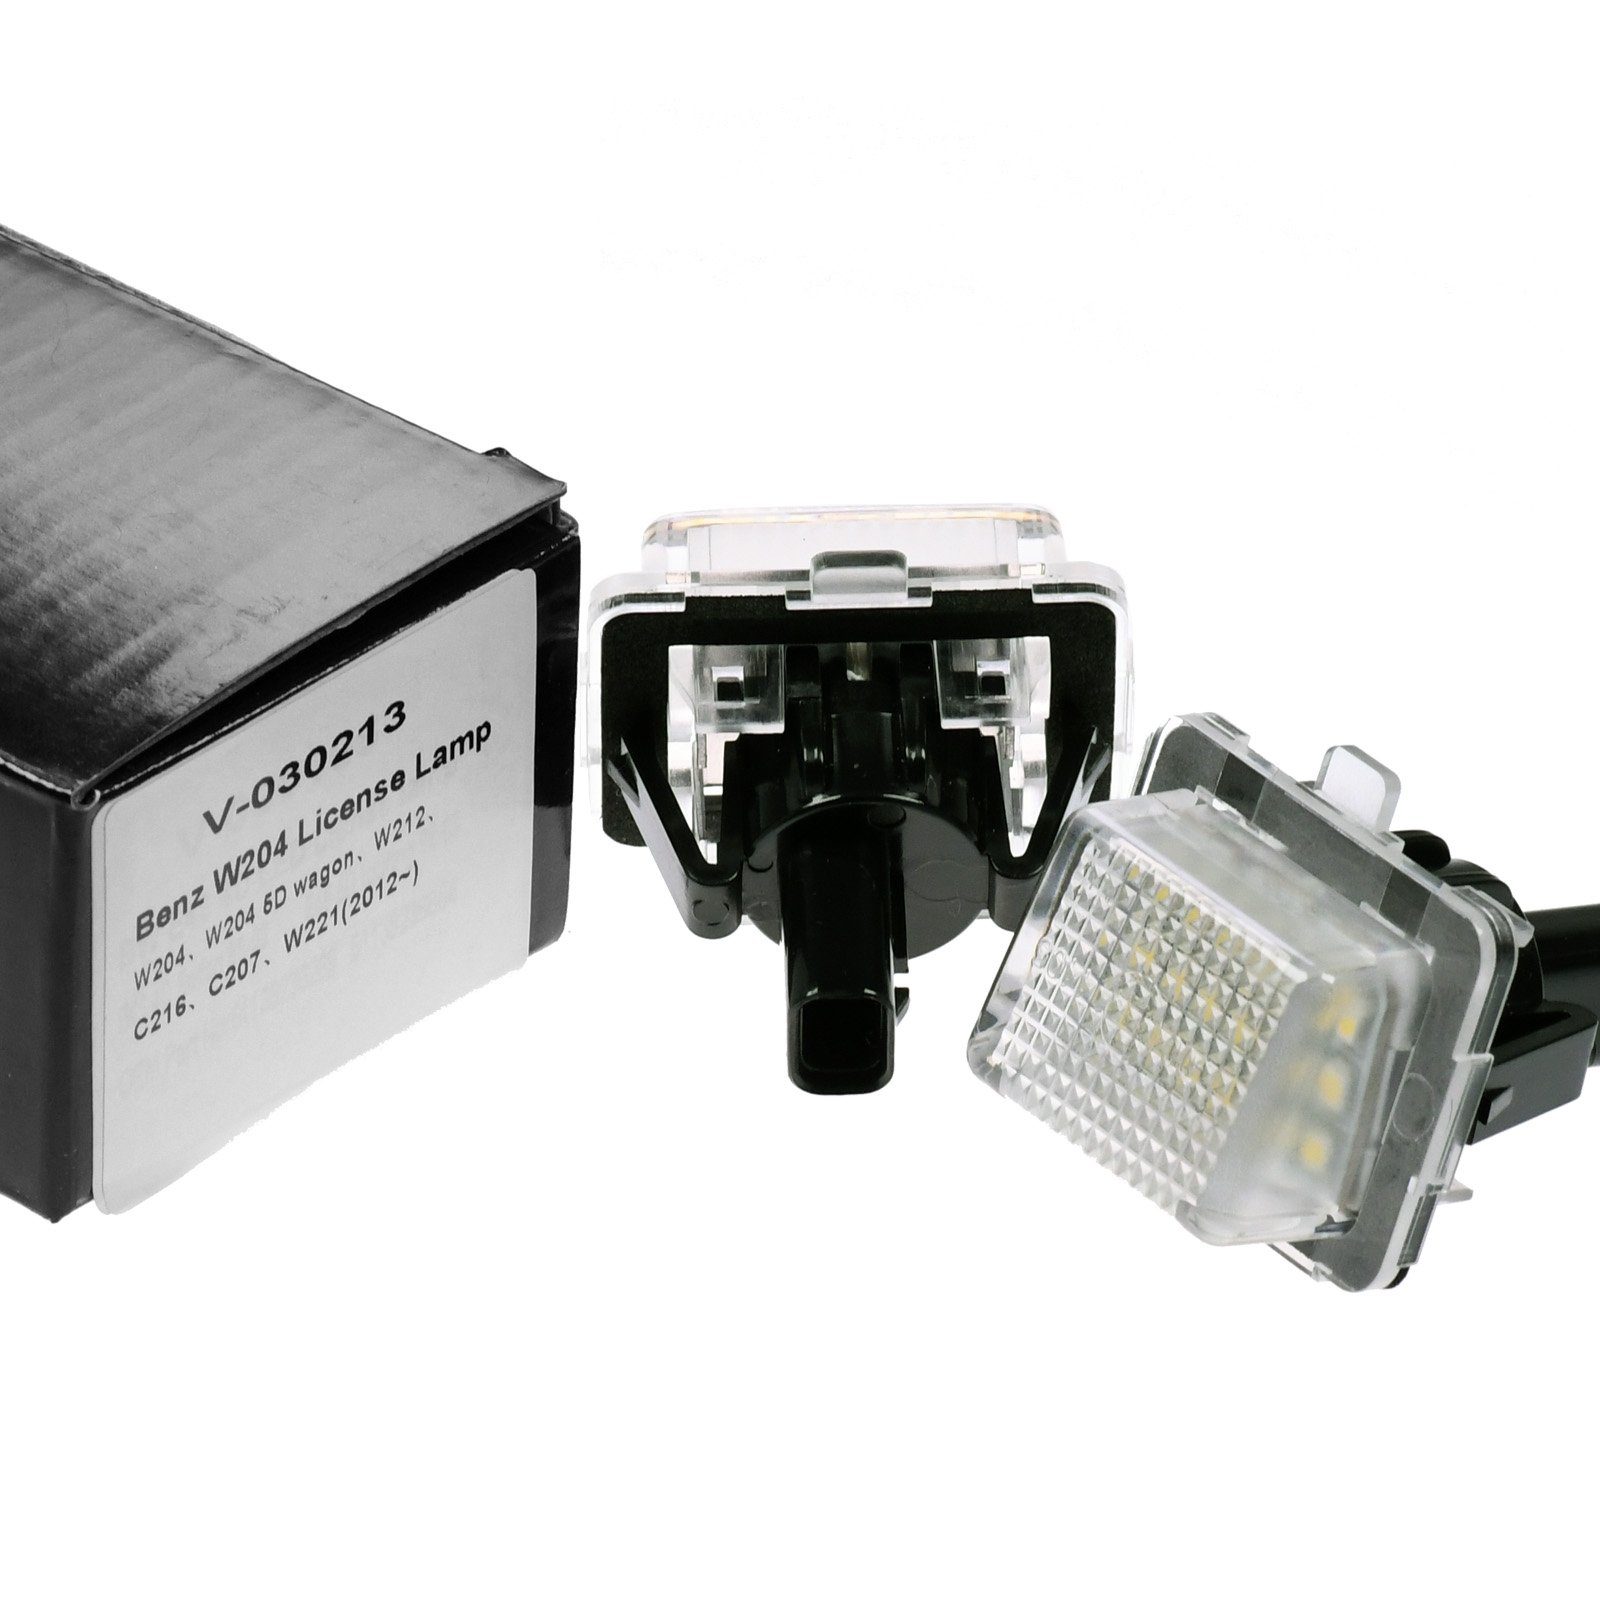 Vinstar KFZ-Ersatzleuchte LED Kennzeichenbeleuchtung E-geprüft für